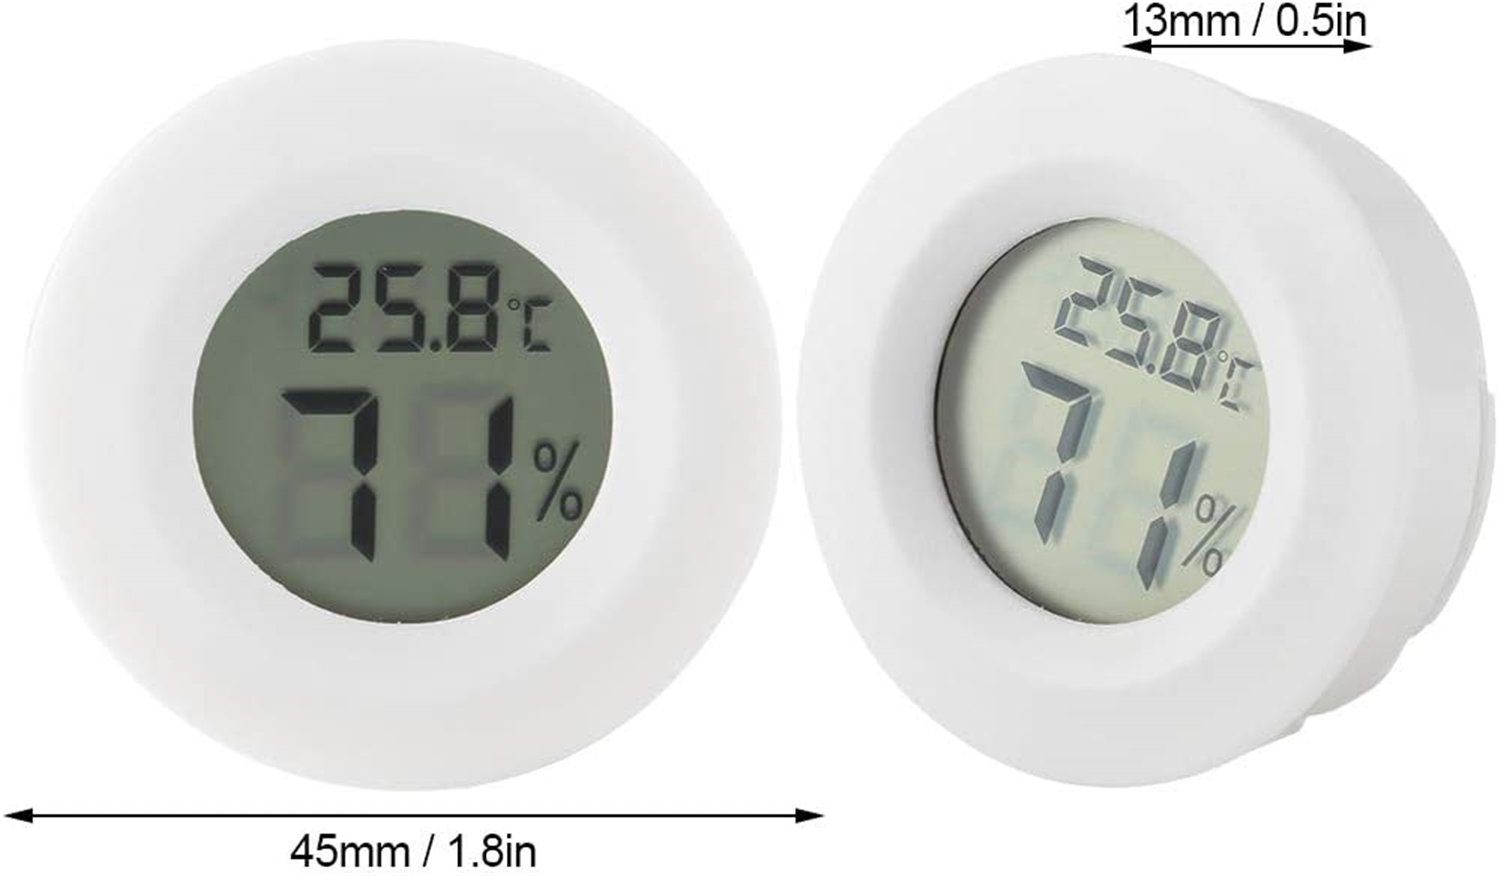 Thermo-Hygrometer 3er-Set, Mini Thermometer Olotos Luftfeuchtigkeit Kontrolle für Innenraum Kühlschrank LCD Weiß Messgerät Temperatur Digitales Hygrometer